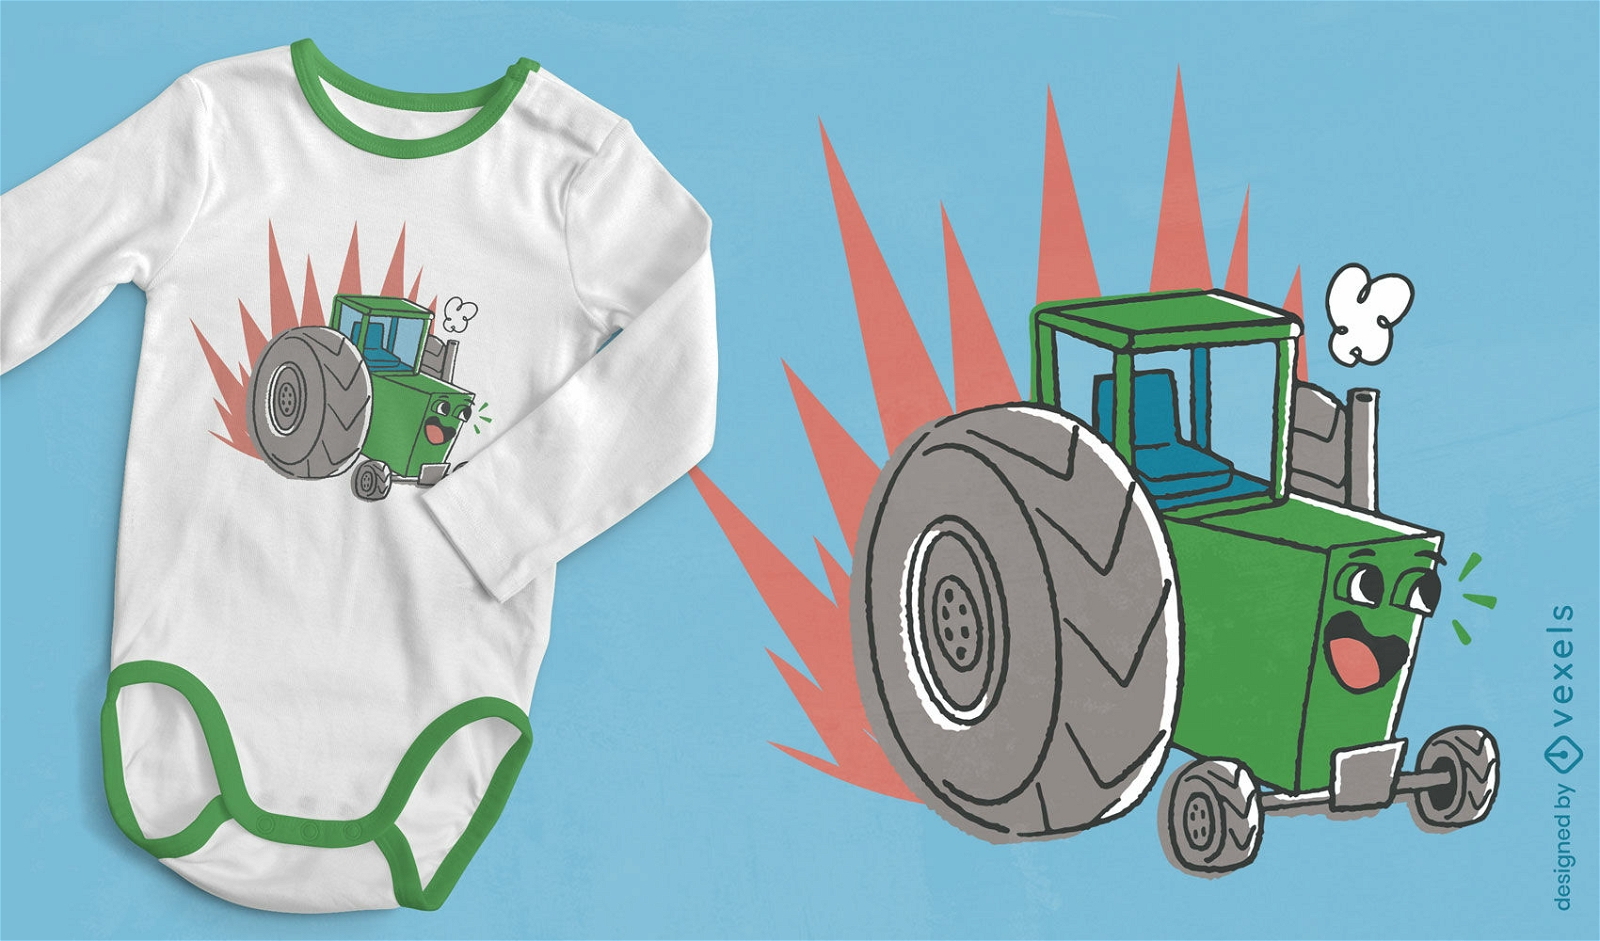 Diseño de camiseta de dibujos animados de tractor de campo